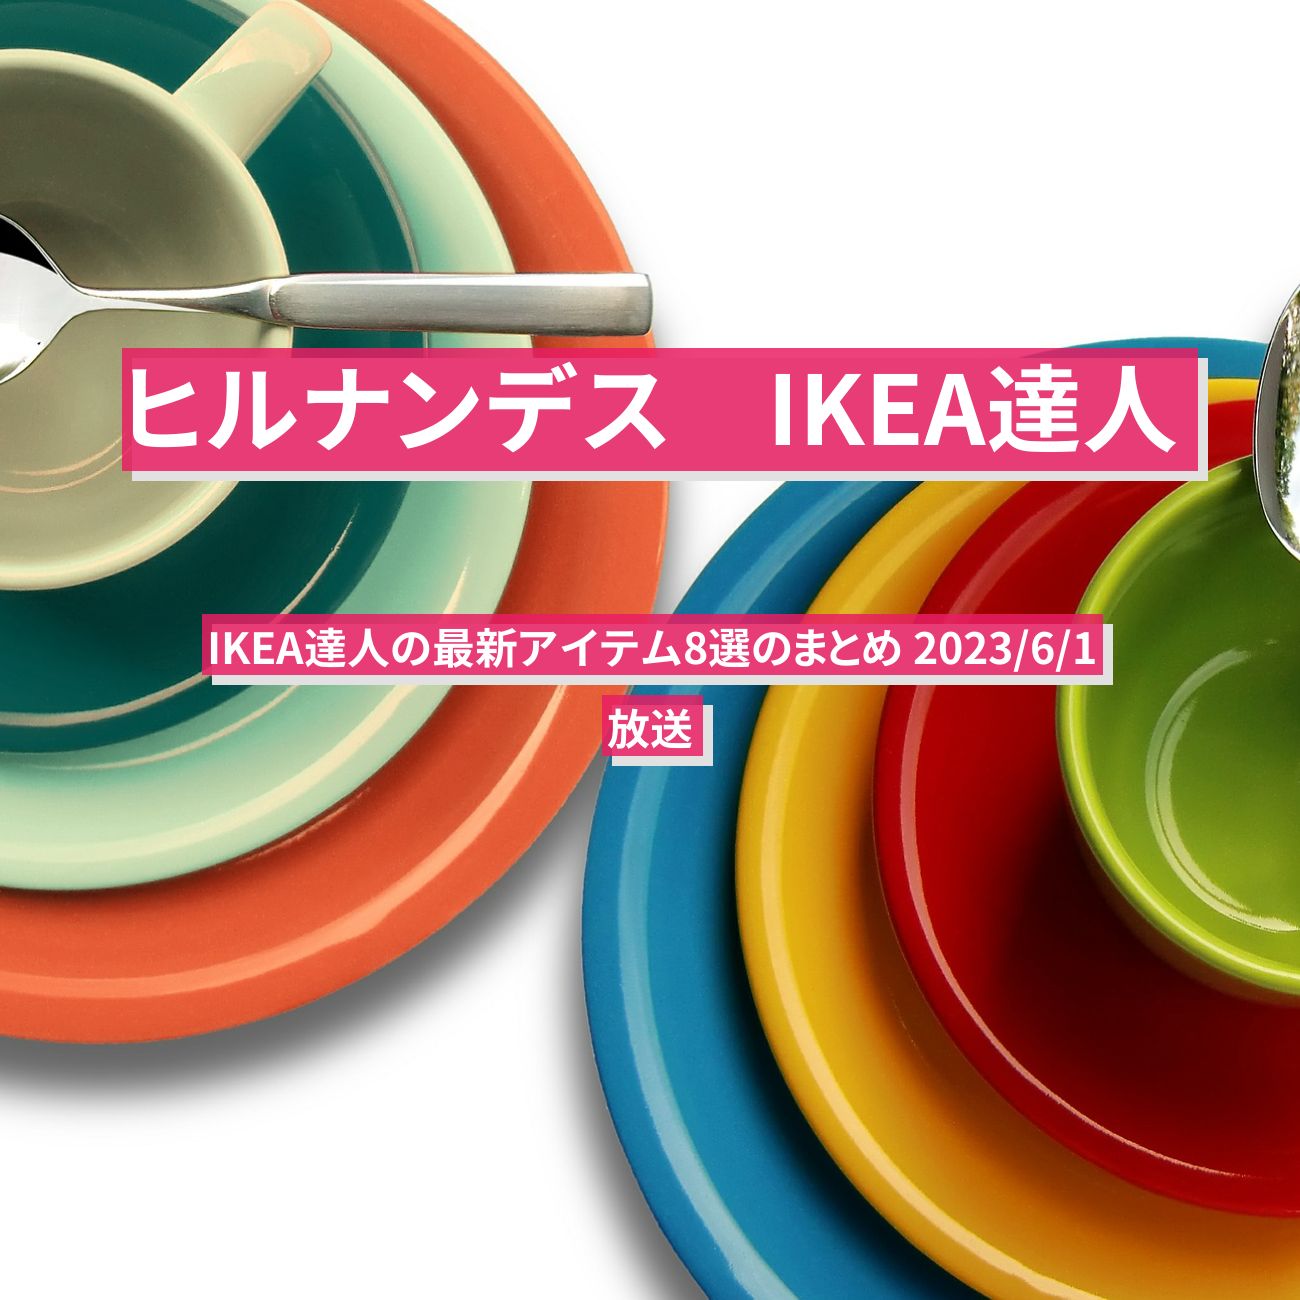 【ヒルナンデス】イケア（IKEA）達人の最新アイテム8選のまとめ 2023/6/1放送